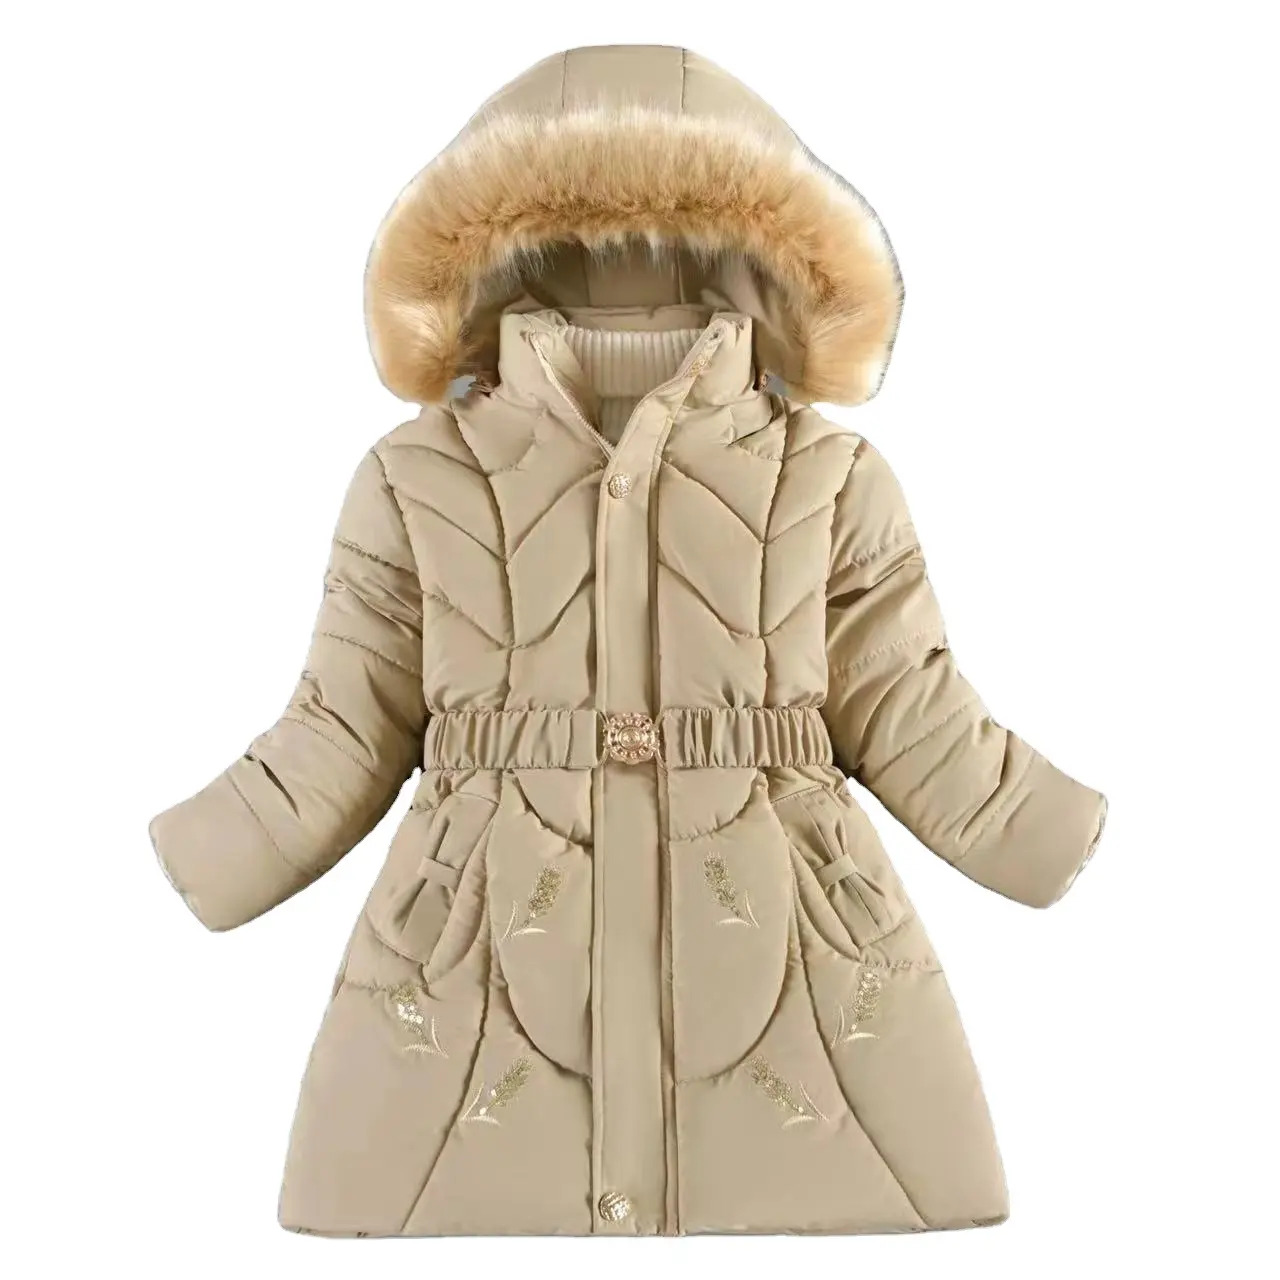 Abbigliamento all'ingrosso moda invernale per tenere al caldo le ragazze piumino per adolescenti a prova di freddo cappotto antivento con cappuccio